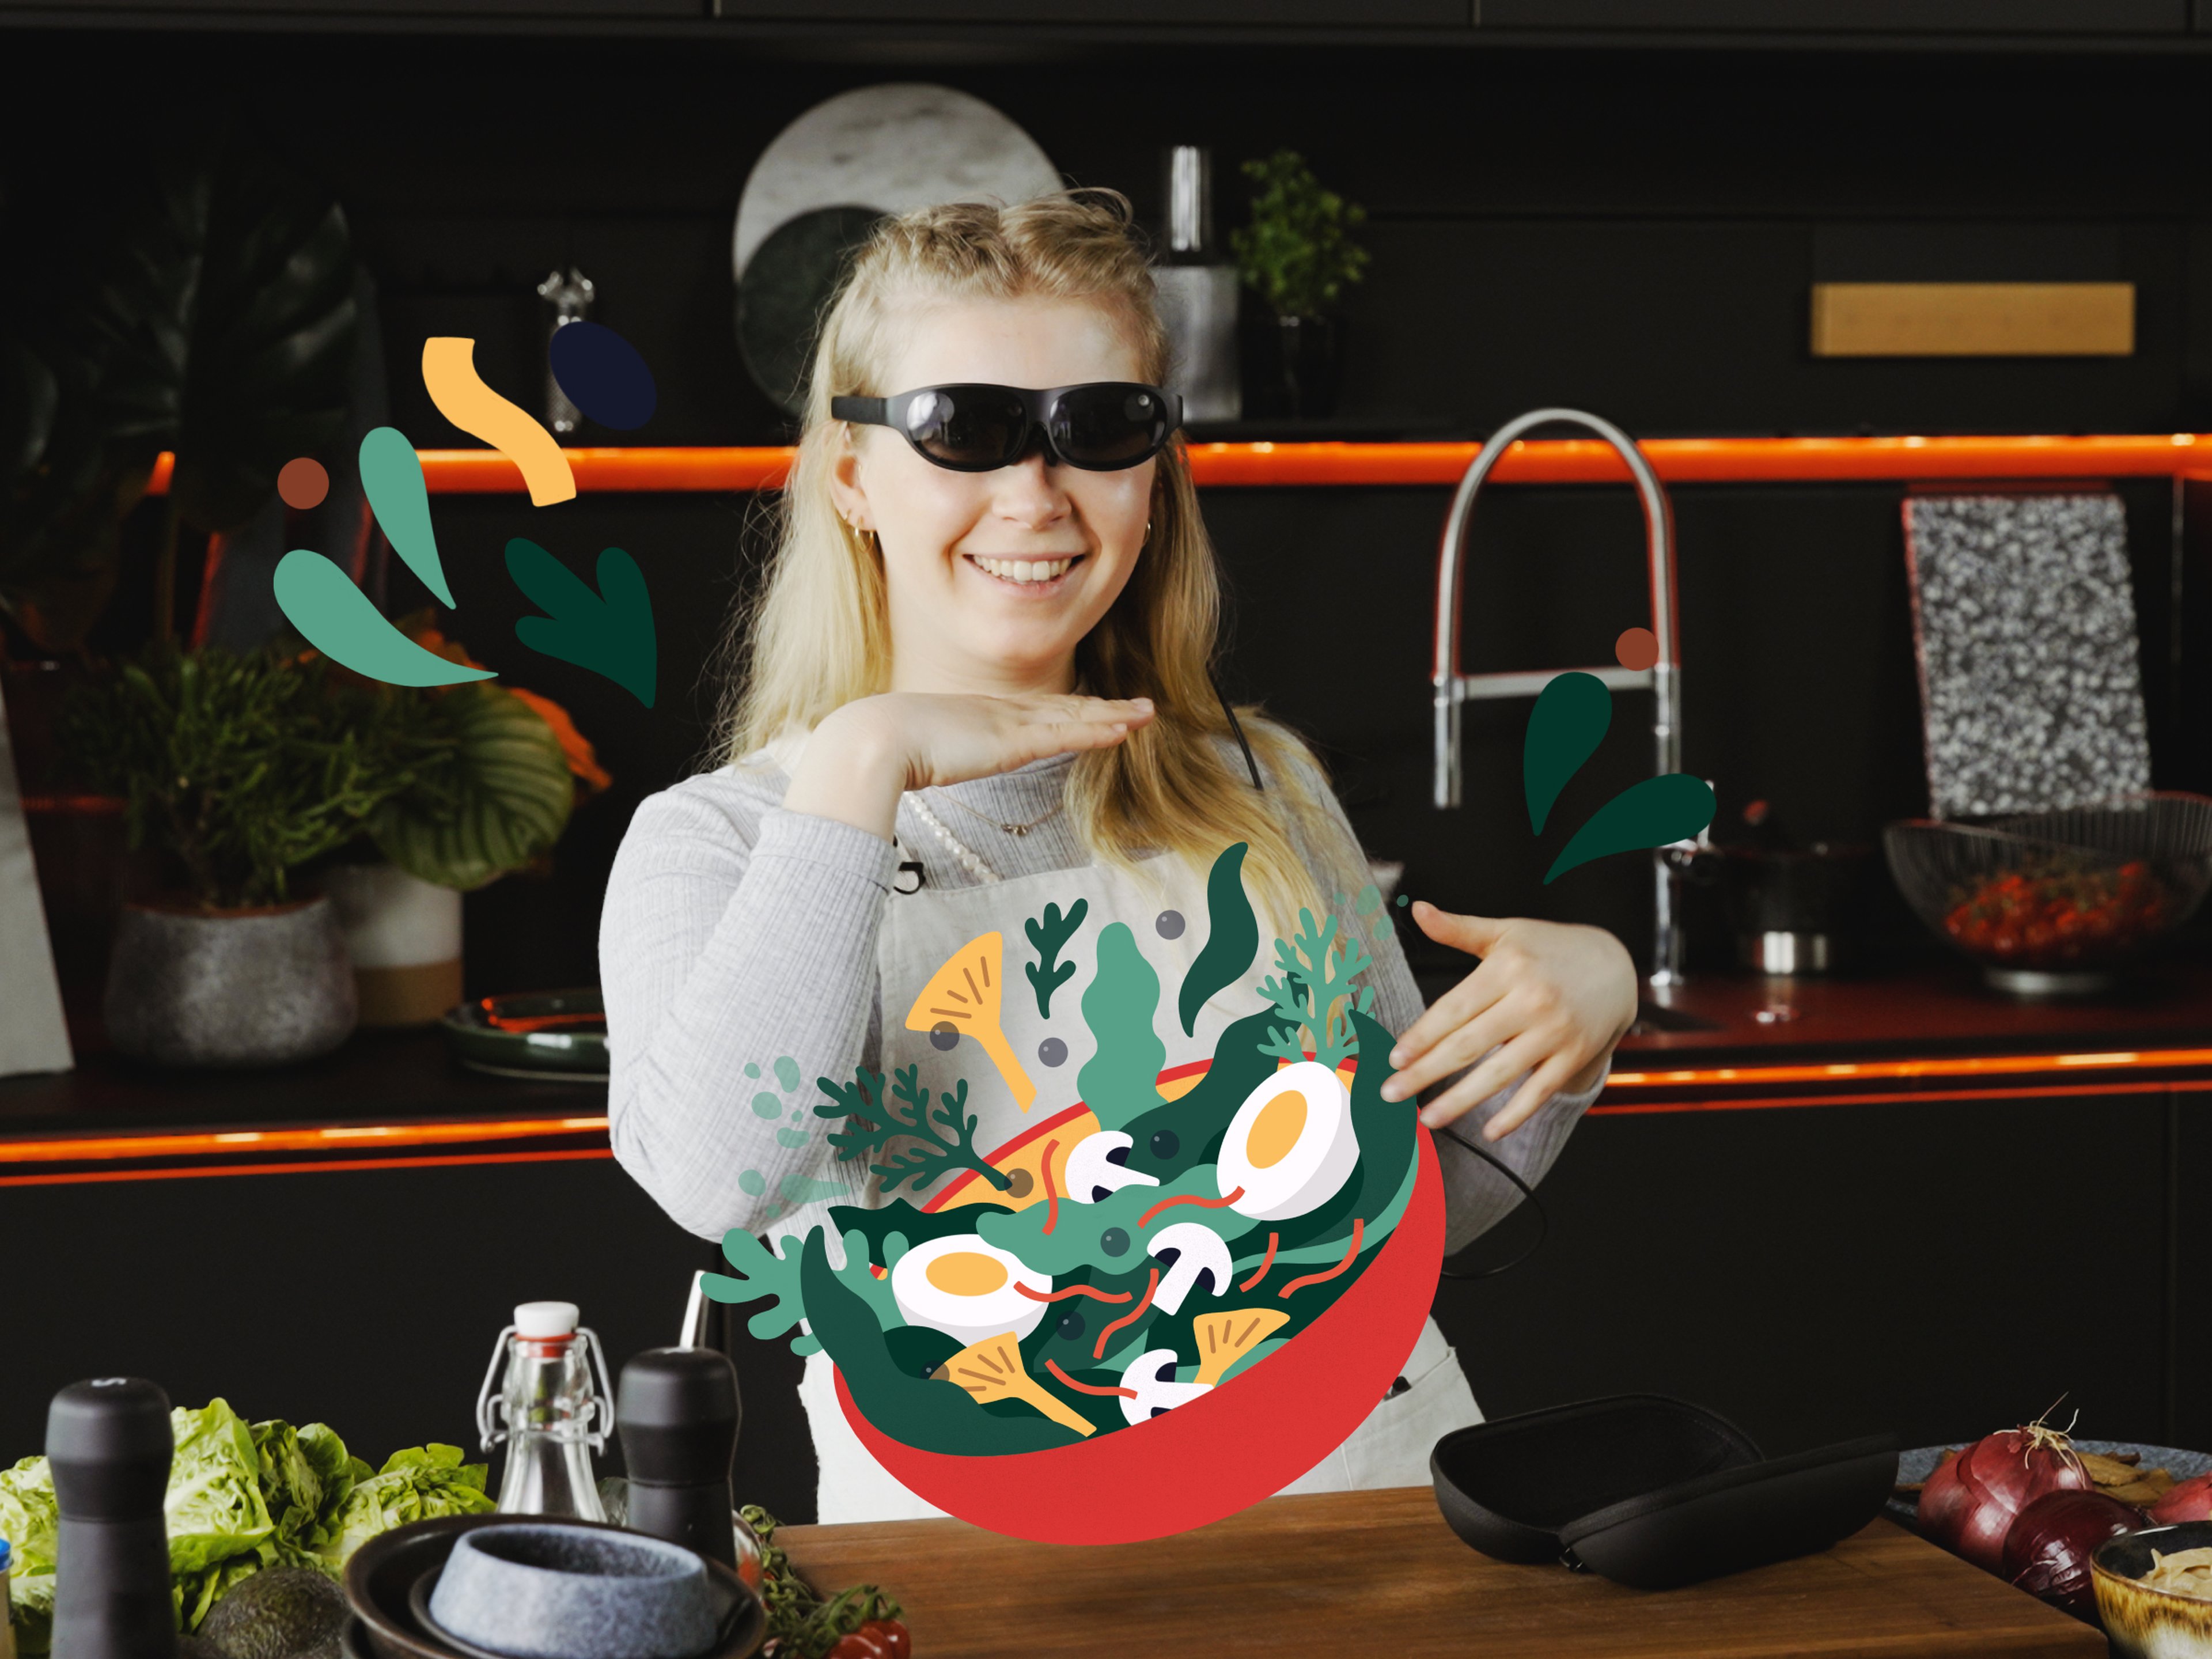 Hanna macht einen futuristischen Salat mit Augmented Reality